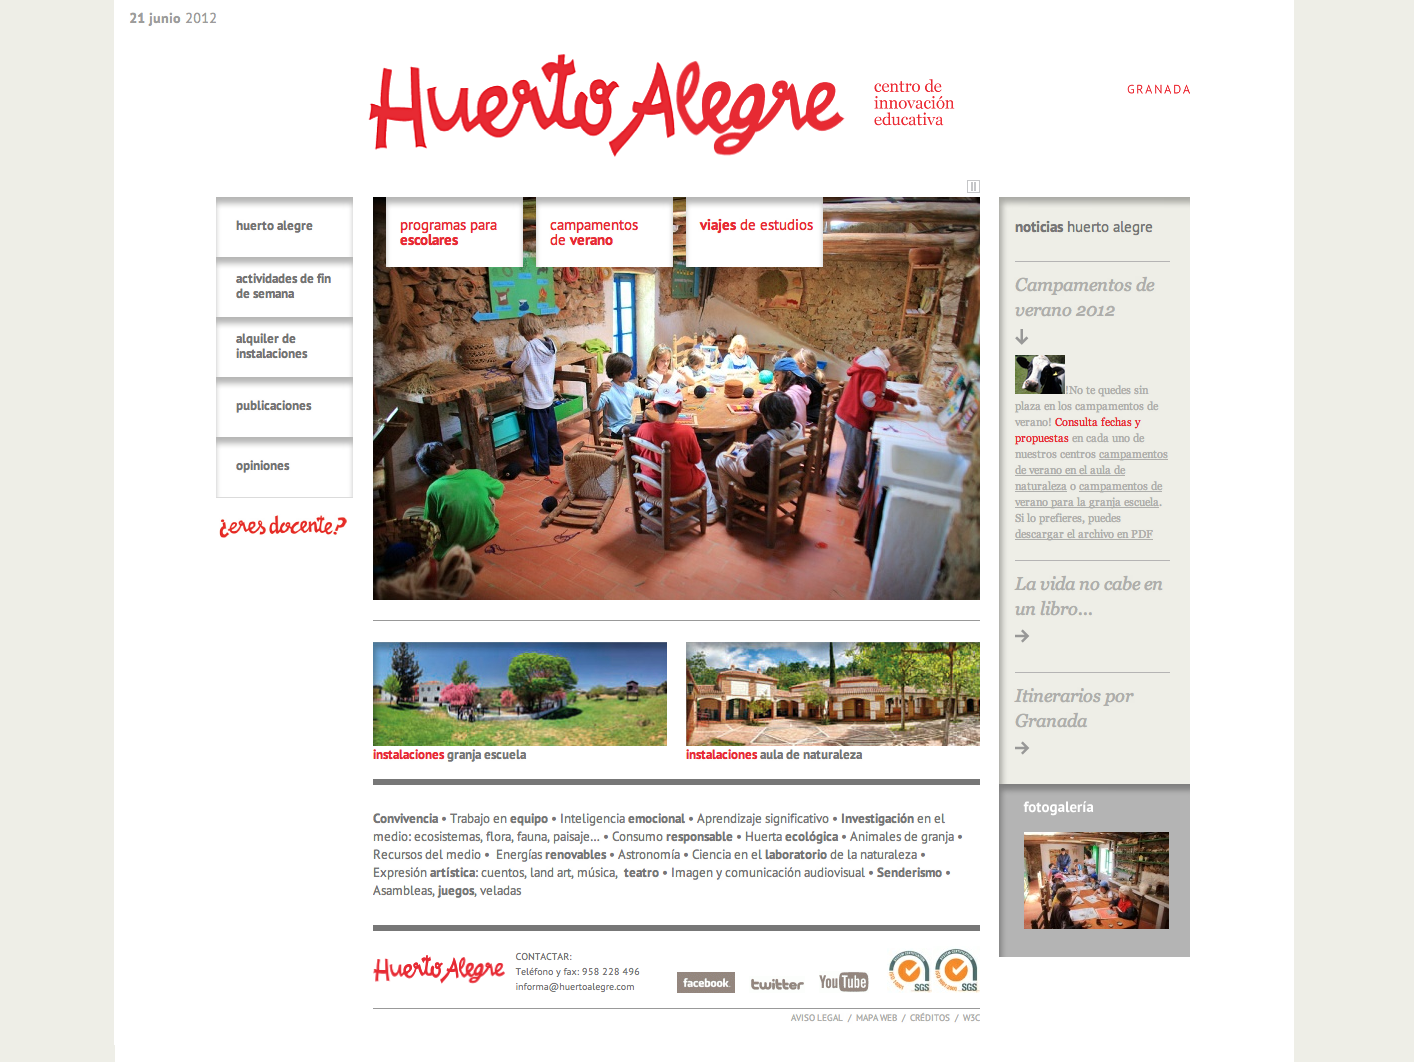 Huerto Alegre - centro de innovación educativa (associative)